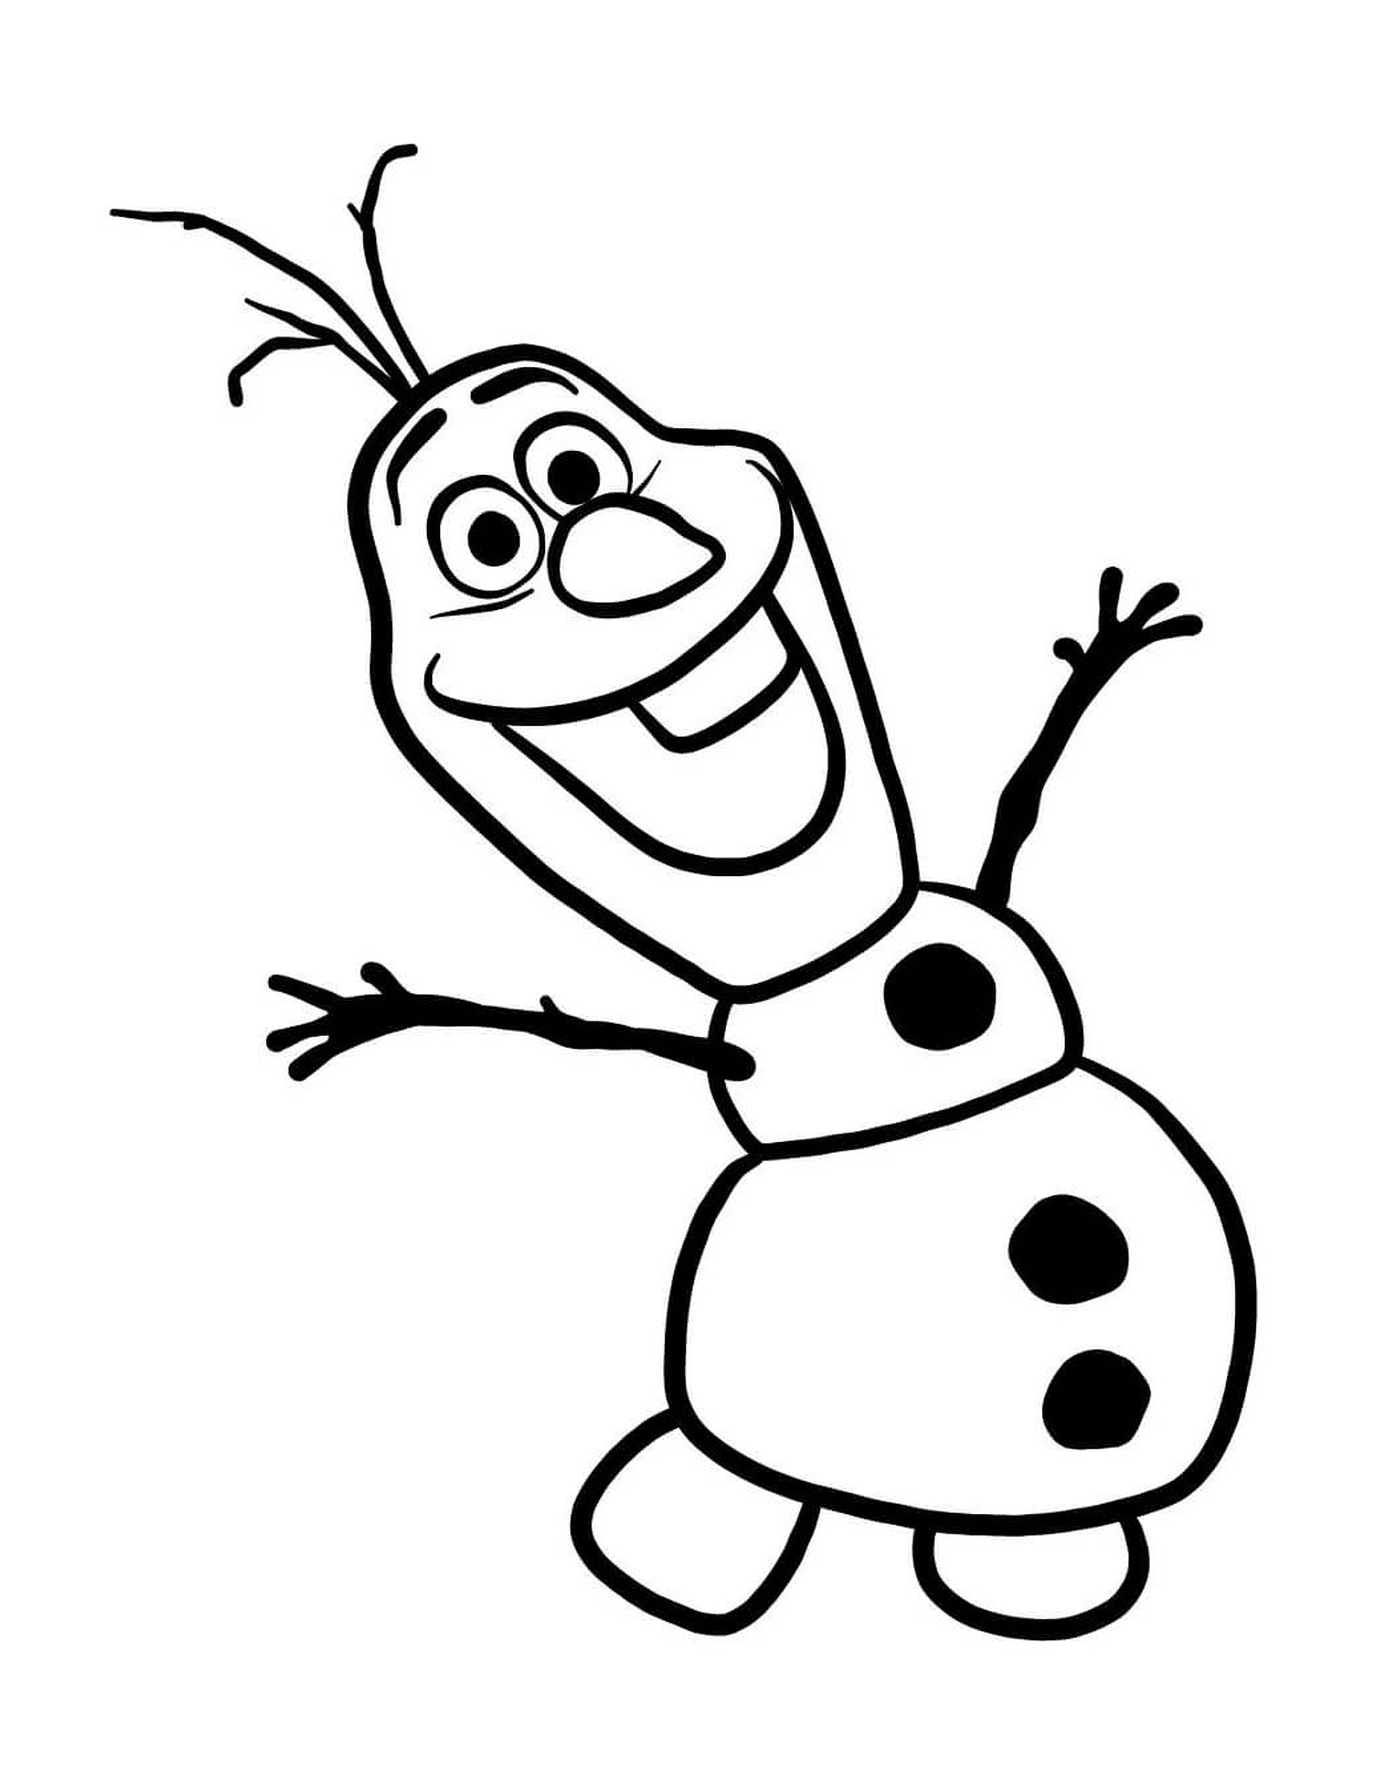   Olaf, le bonhomme de neige créé par Elsa 